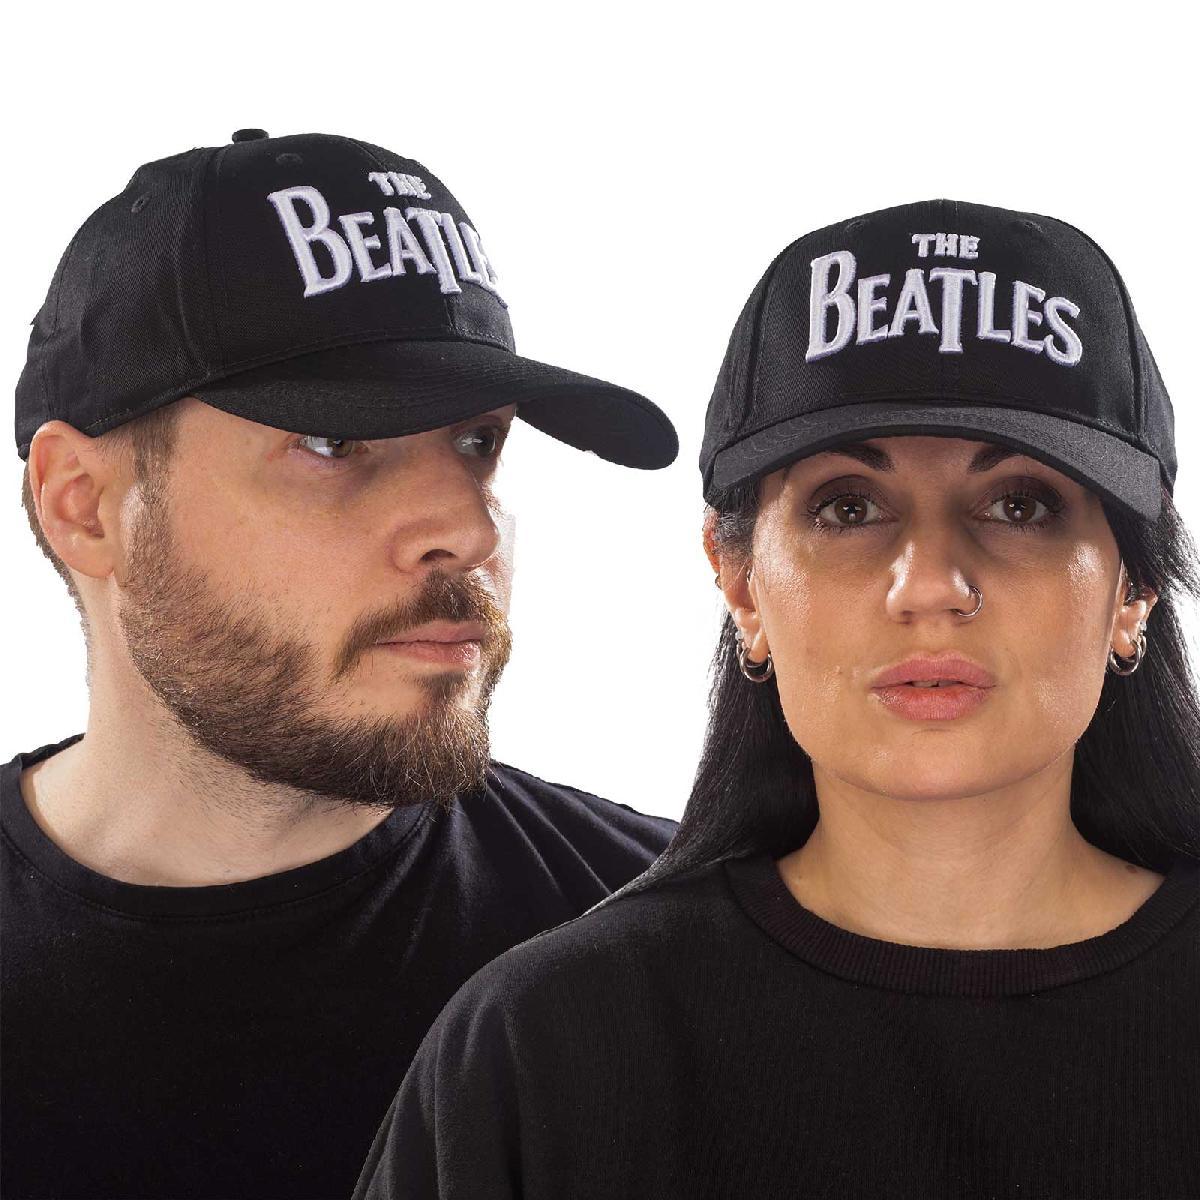 (ザ・ビートルズ) The Beatles オフィシャル商品 ユニセックス Drop T ロゴ ベースボールキャップ 帽子 【海外通販】